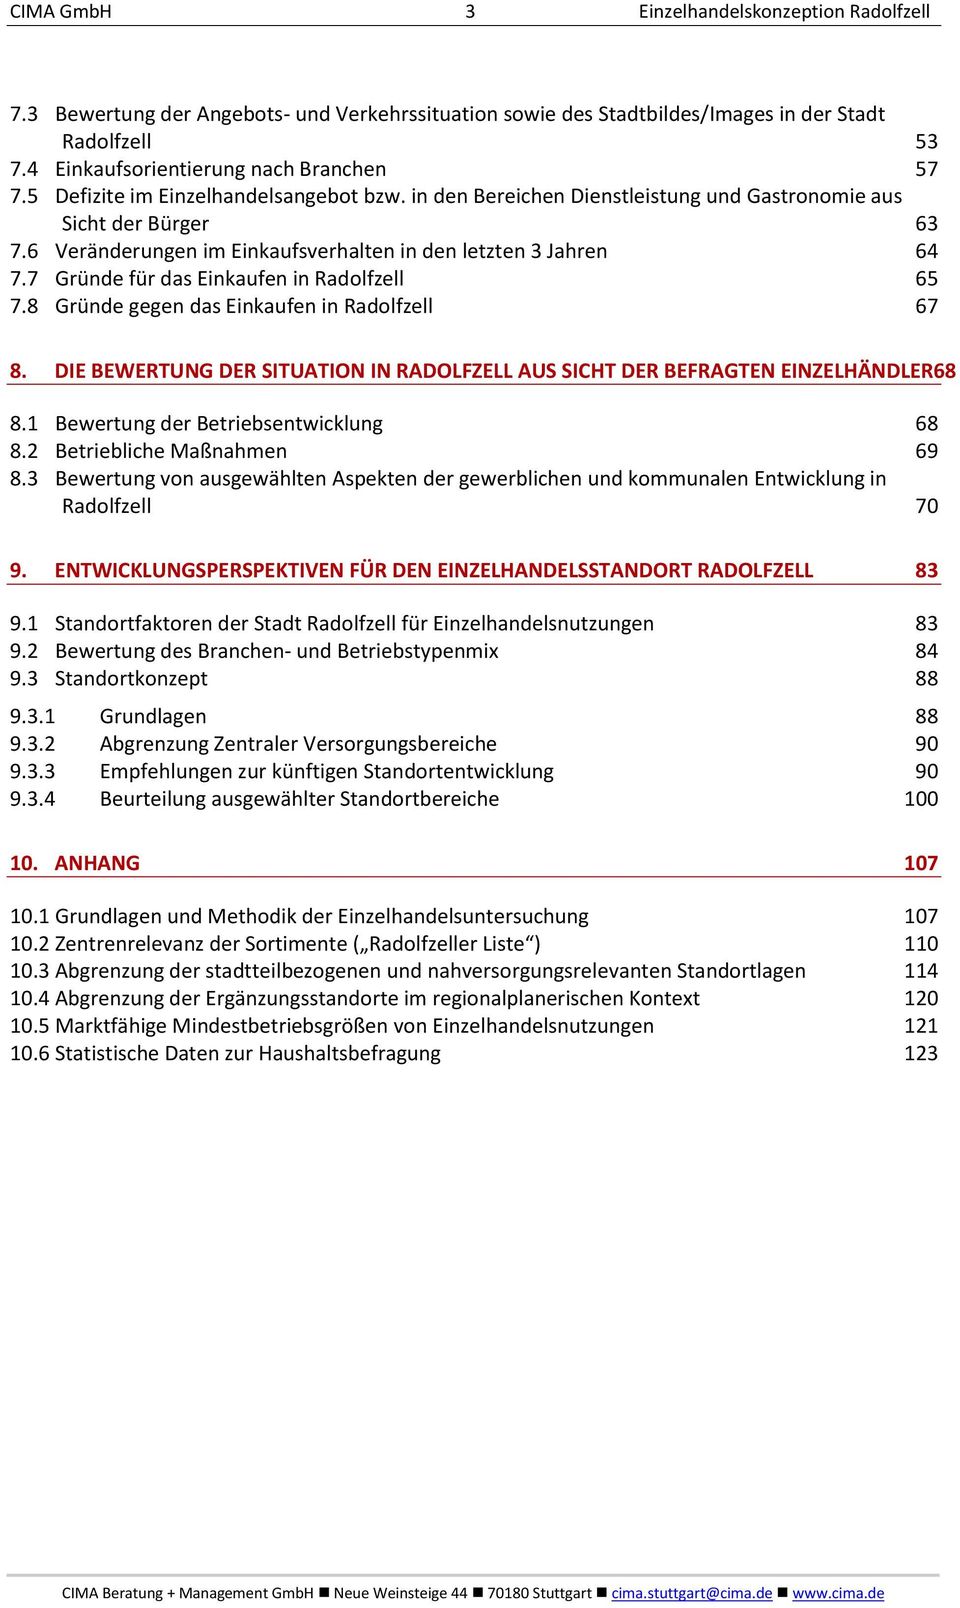 7 Gründe für das Einkaufen in Radolfzell 65 7.8 Gründe gegen das Einkaufen in Radolfzell 67 8. DIE BEWERTUNG DER SITUATION IN RADOLFZELL AUS SICHT DER BEFRAGTEN EINZELHÄNDLER68 8.